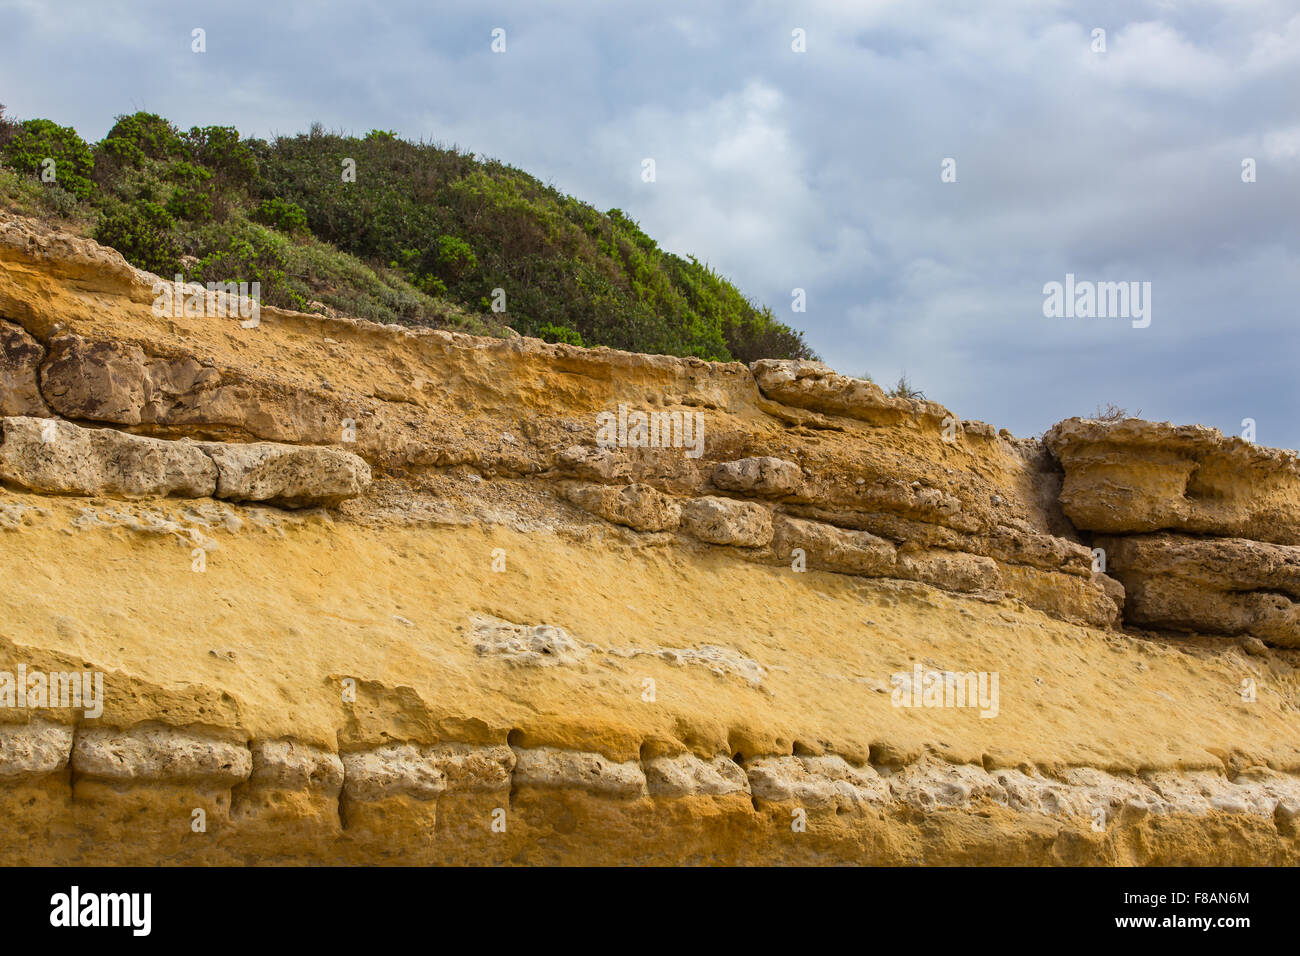 Côte atlantique du Maroc est constitué de sable et de rochers de grès érodées. Banque D'Images